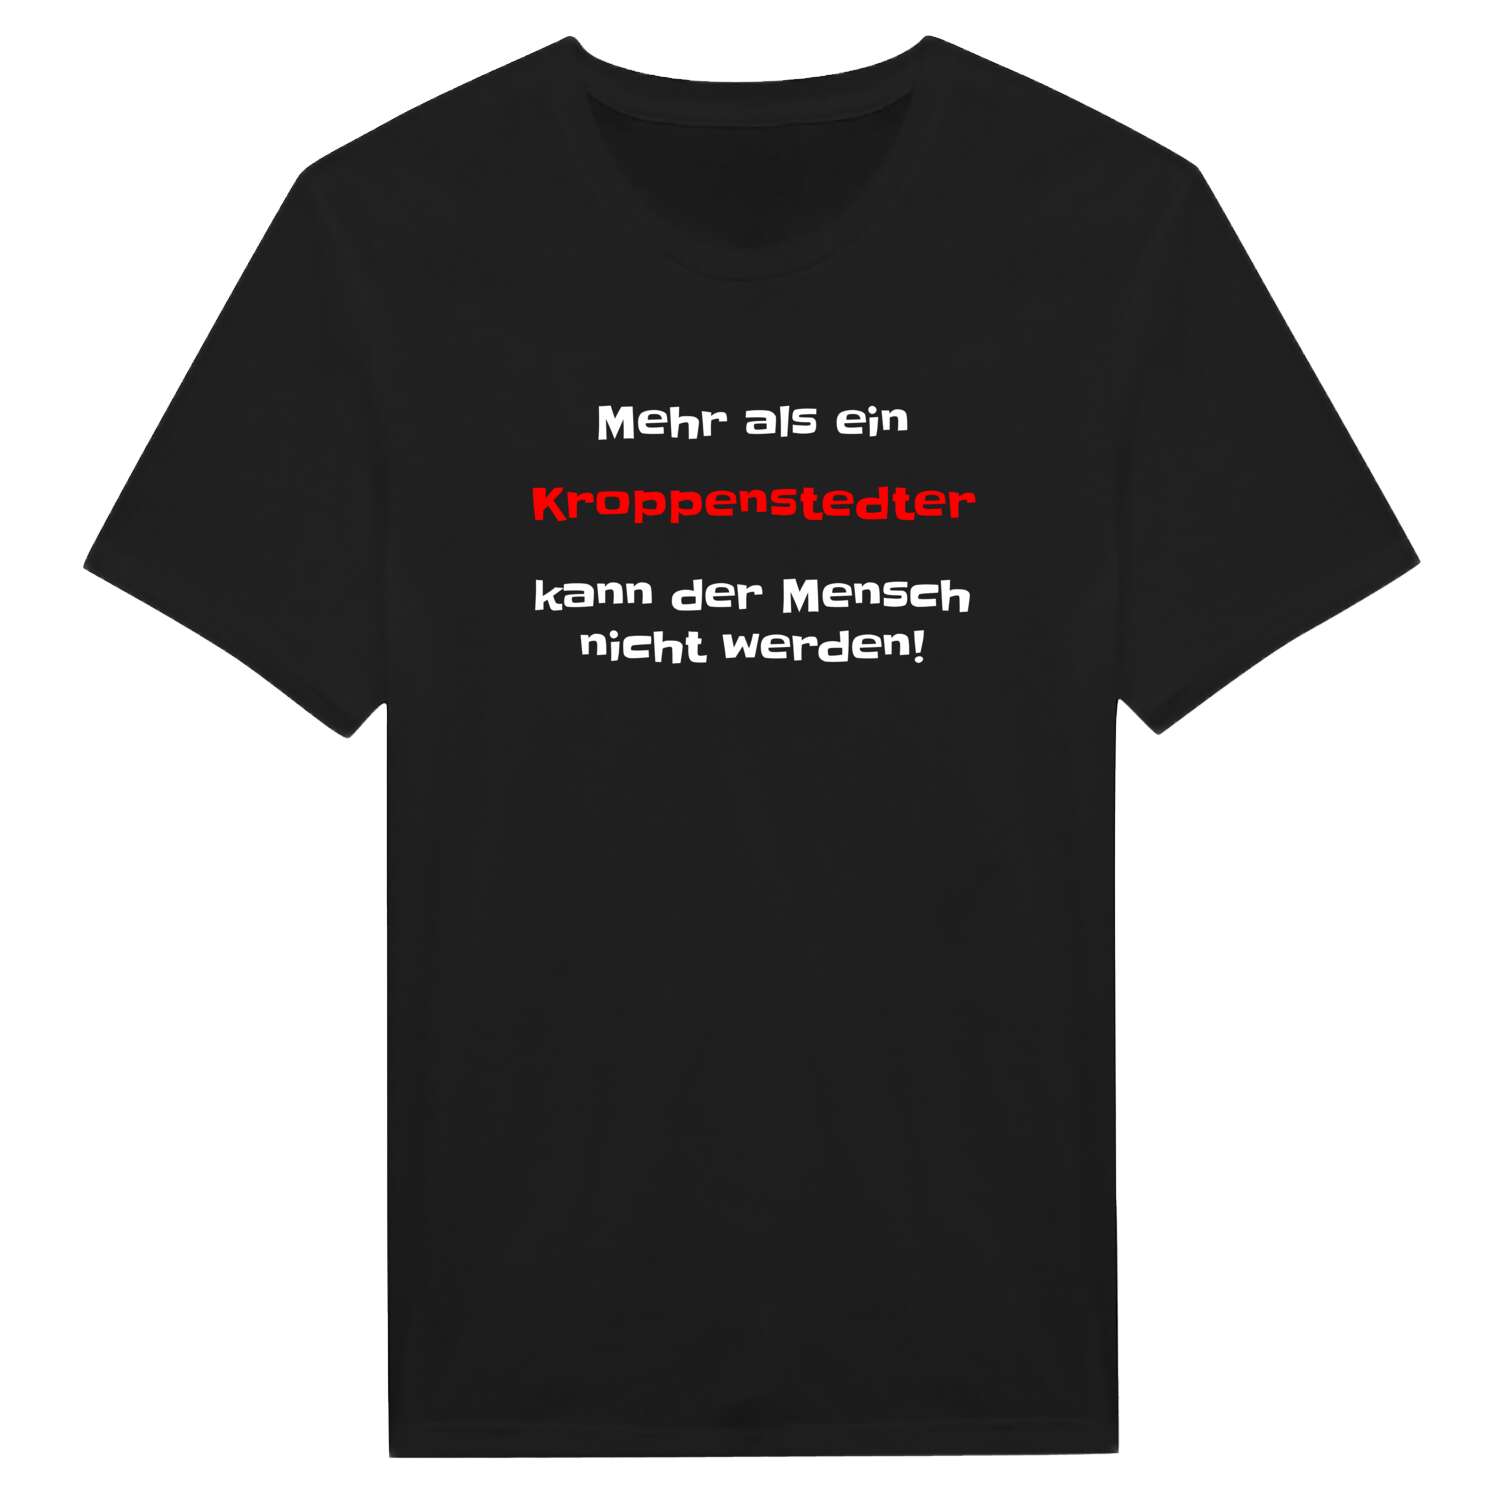 Kroppenstedt T-Shirt »Mehr als ein«